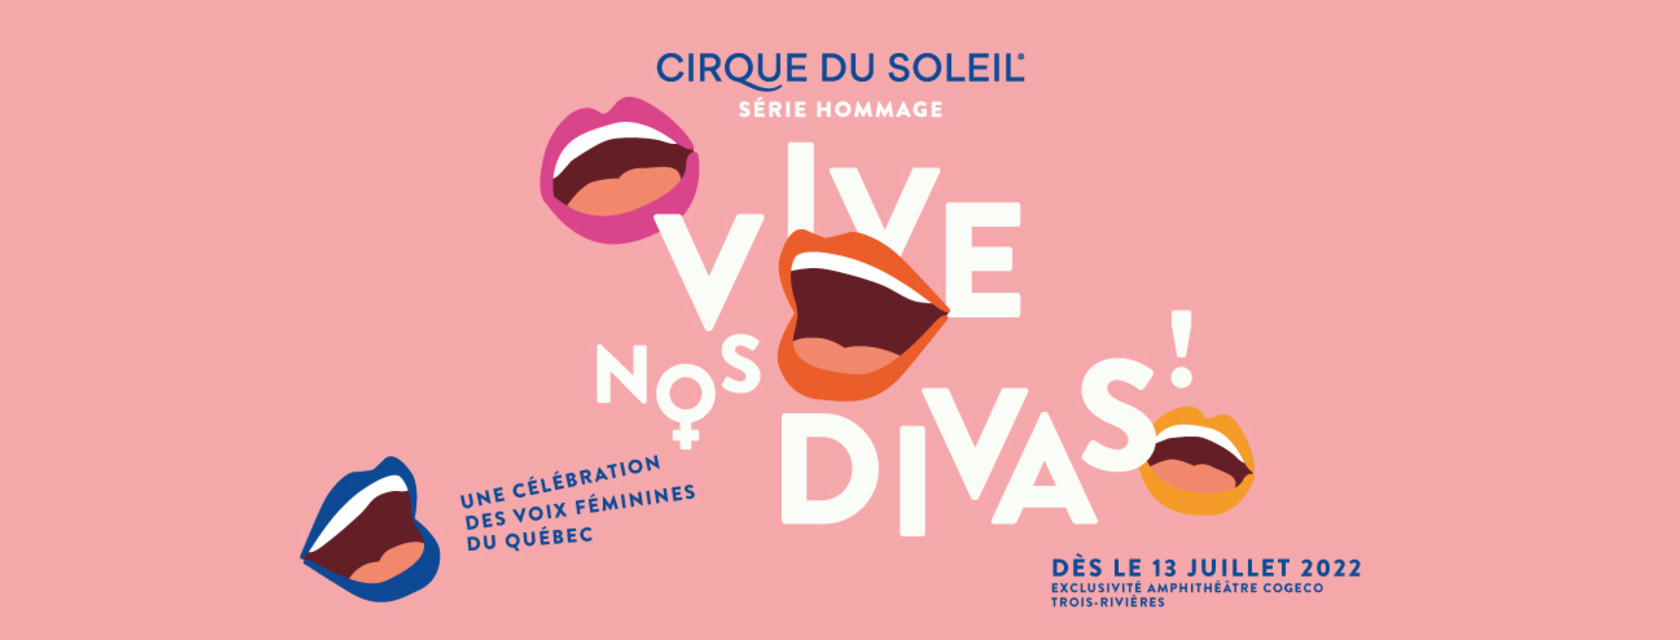 Cirque du Soleil - Hommage aux grandes voix féminines du Québec - Postponement of the show for the 2022 season